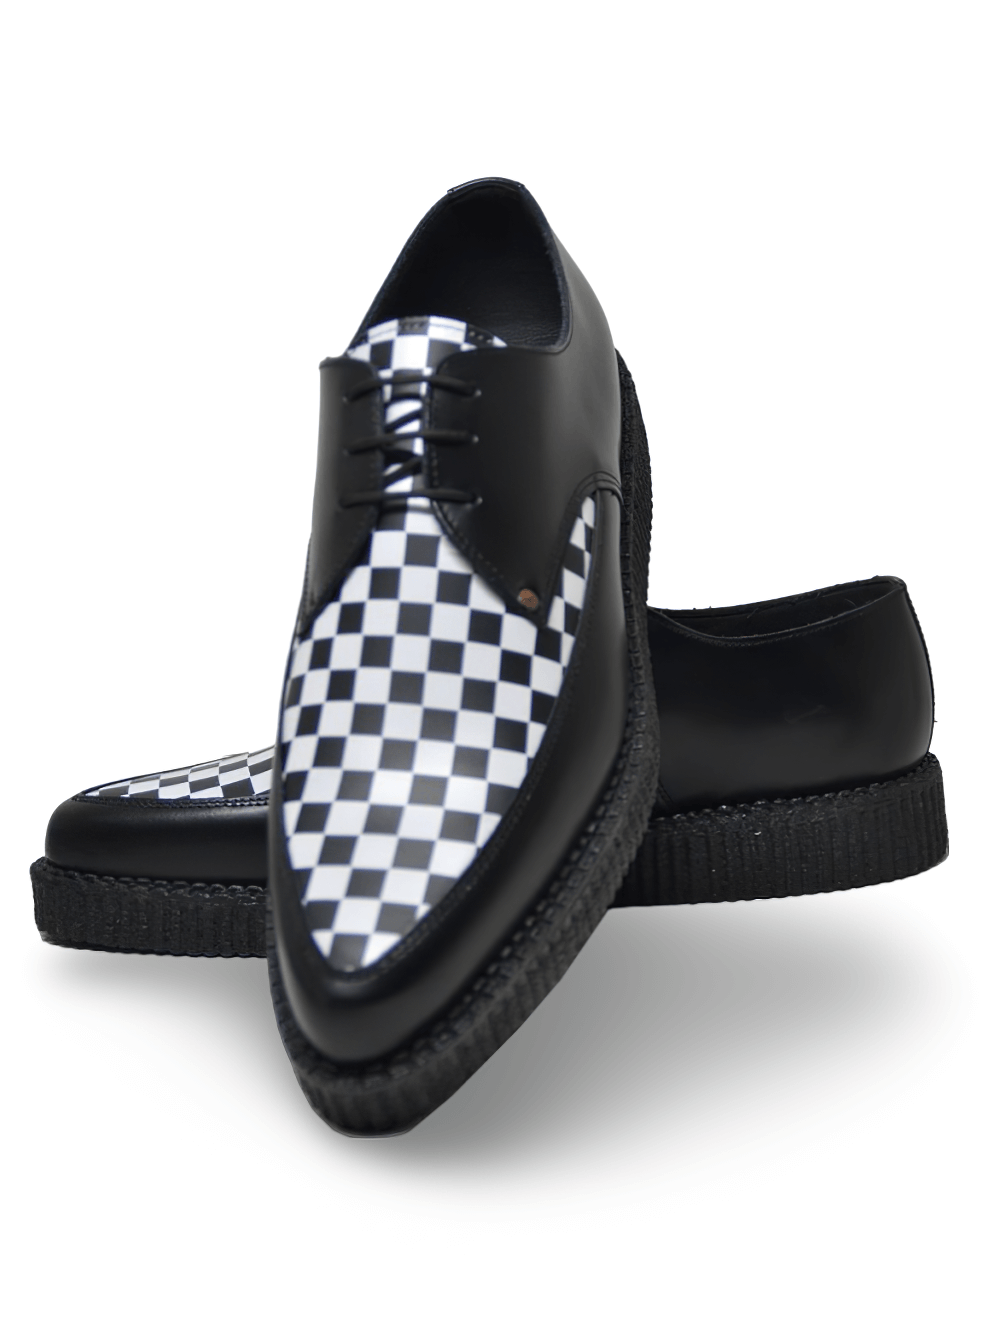 Chaussures Creeper pointues en damier noir et blanc